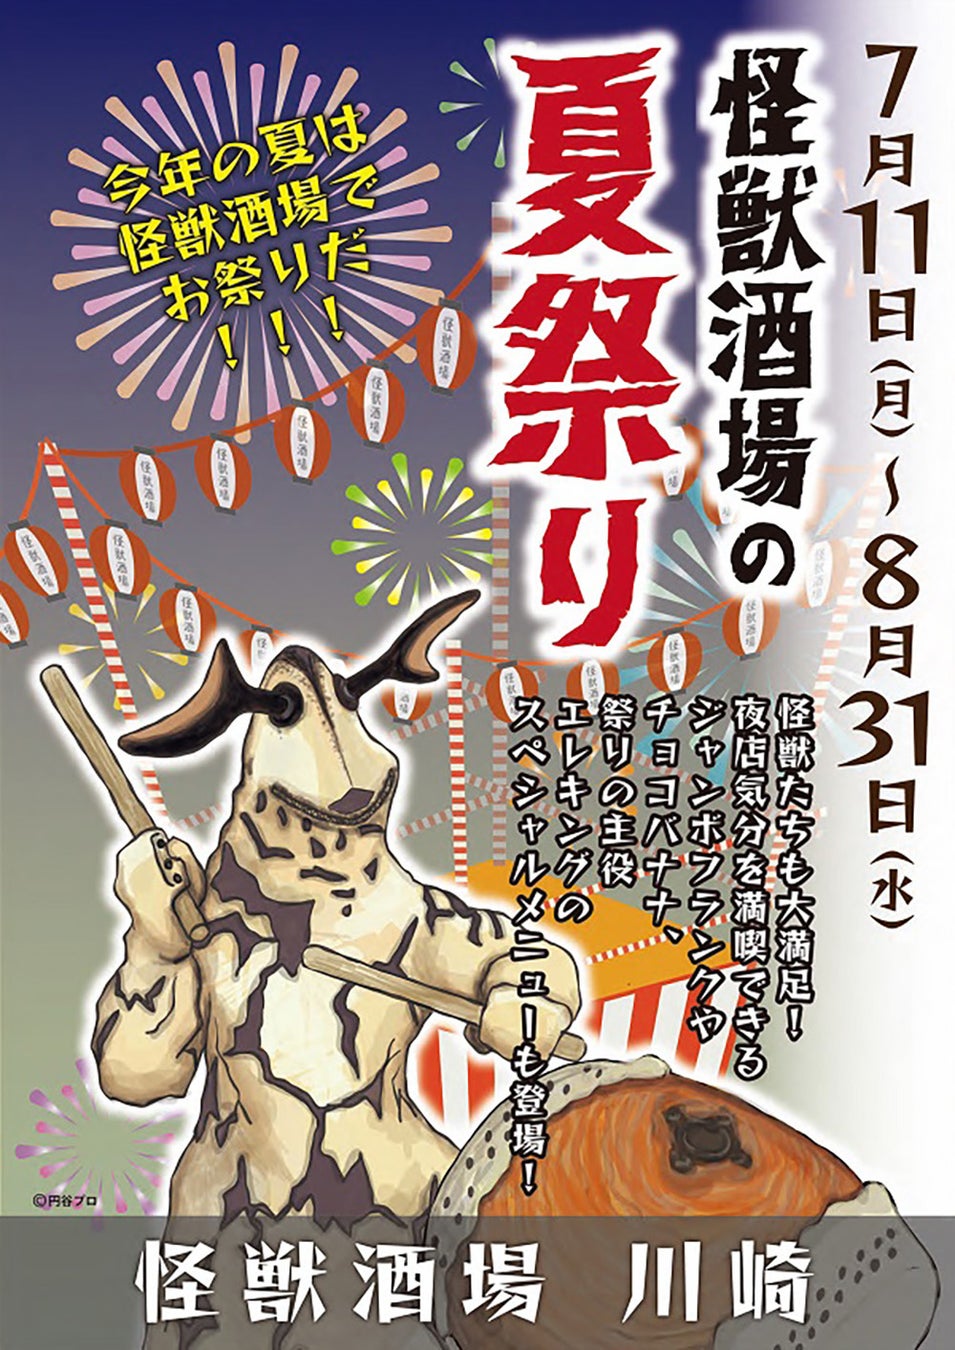 まふまふのＭＶをJOYSOUND「みるハコ」で楽しもう！東京ドーム公演の音源で歌えるカラオケも同時配信！～オリジナルマグカップが当たるチャンスも！～